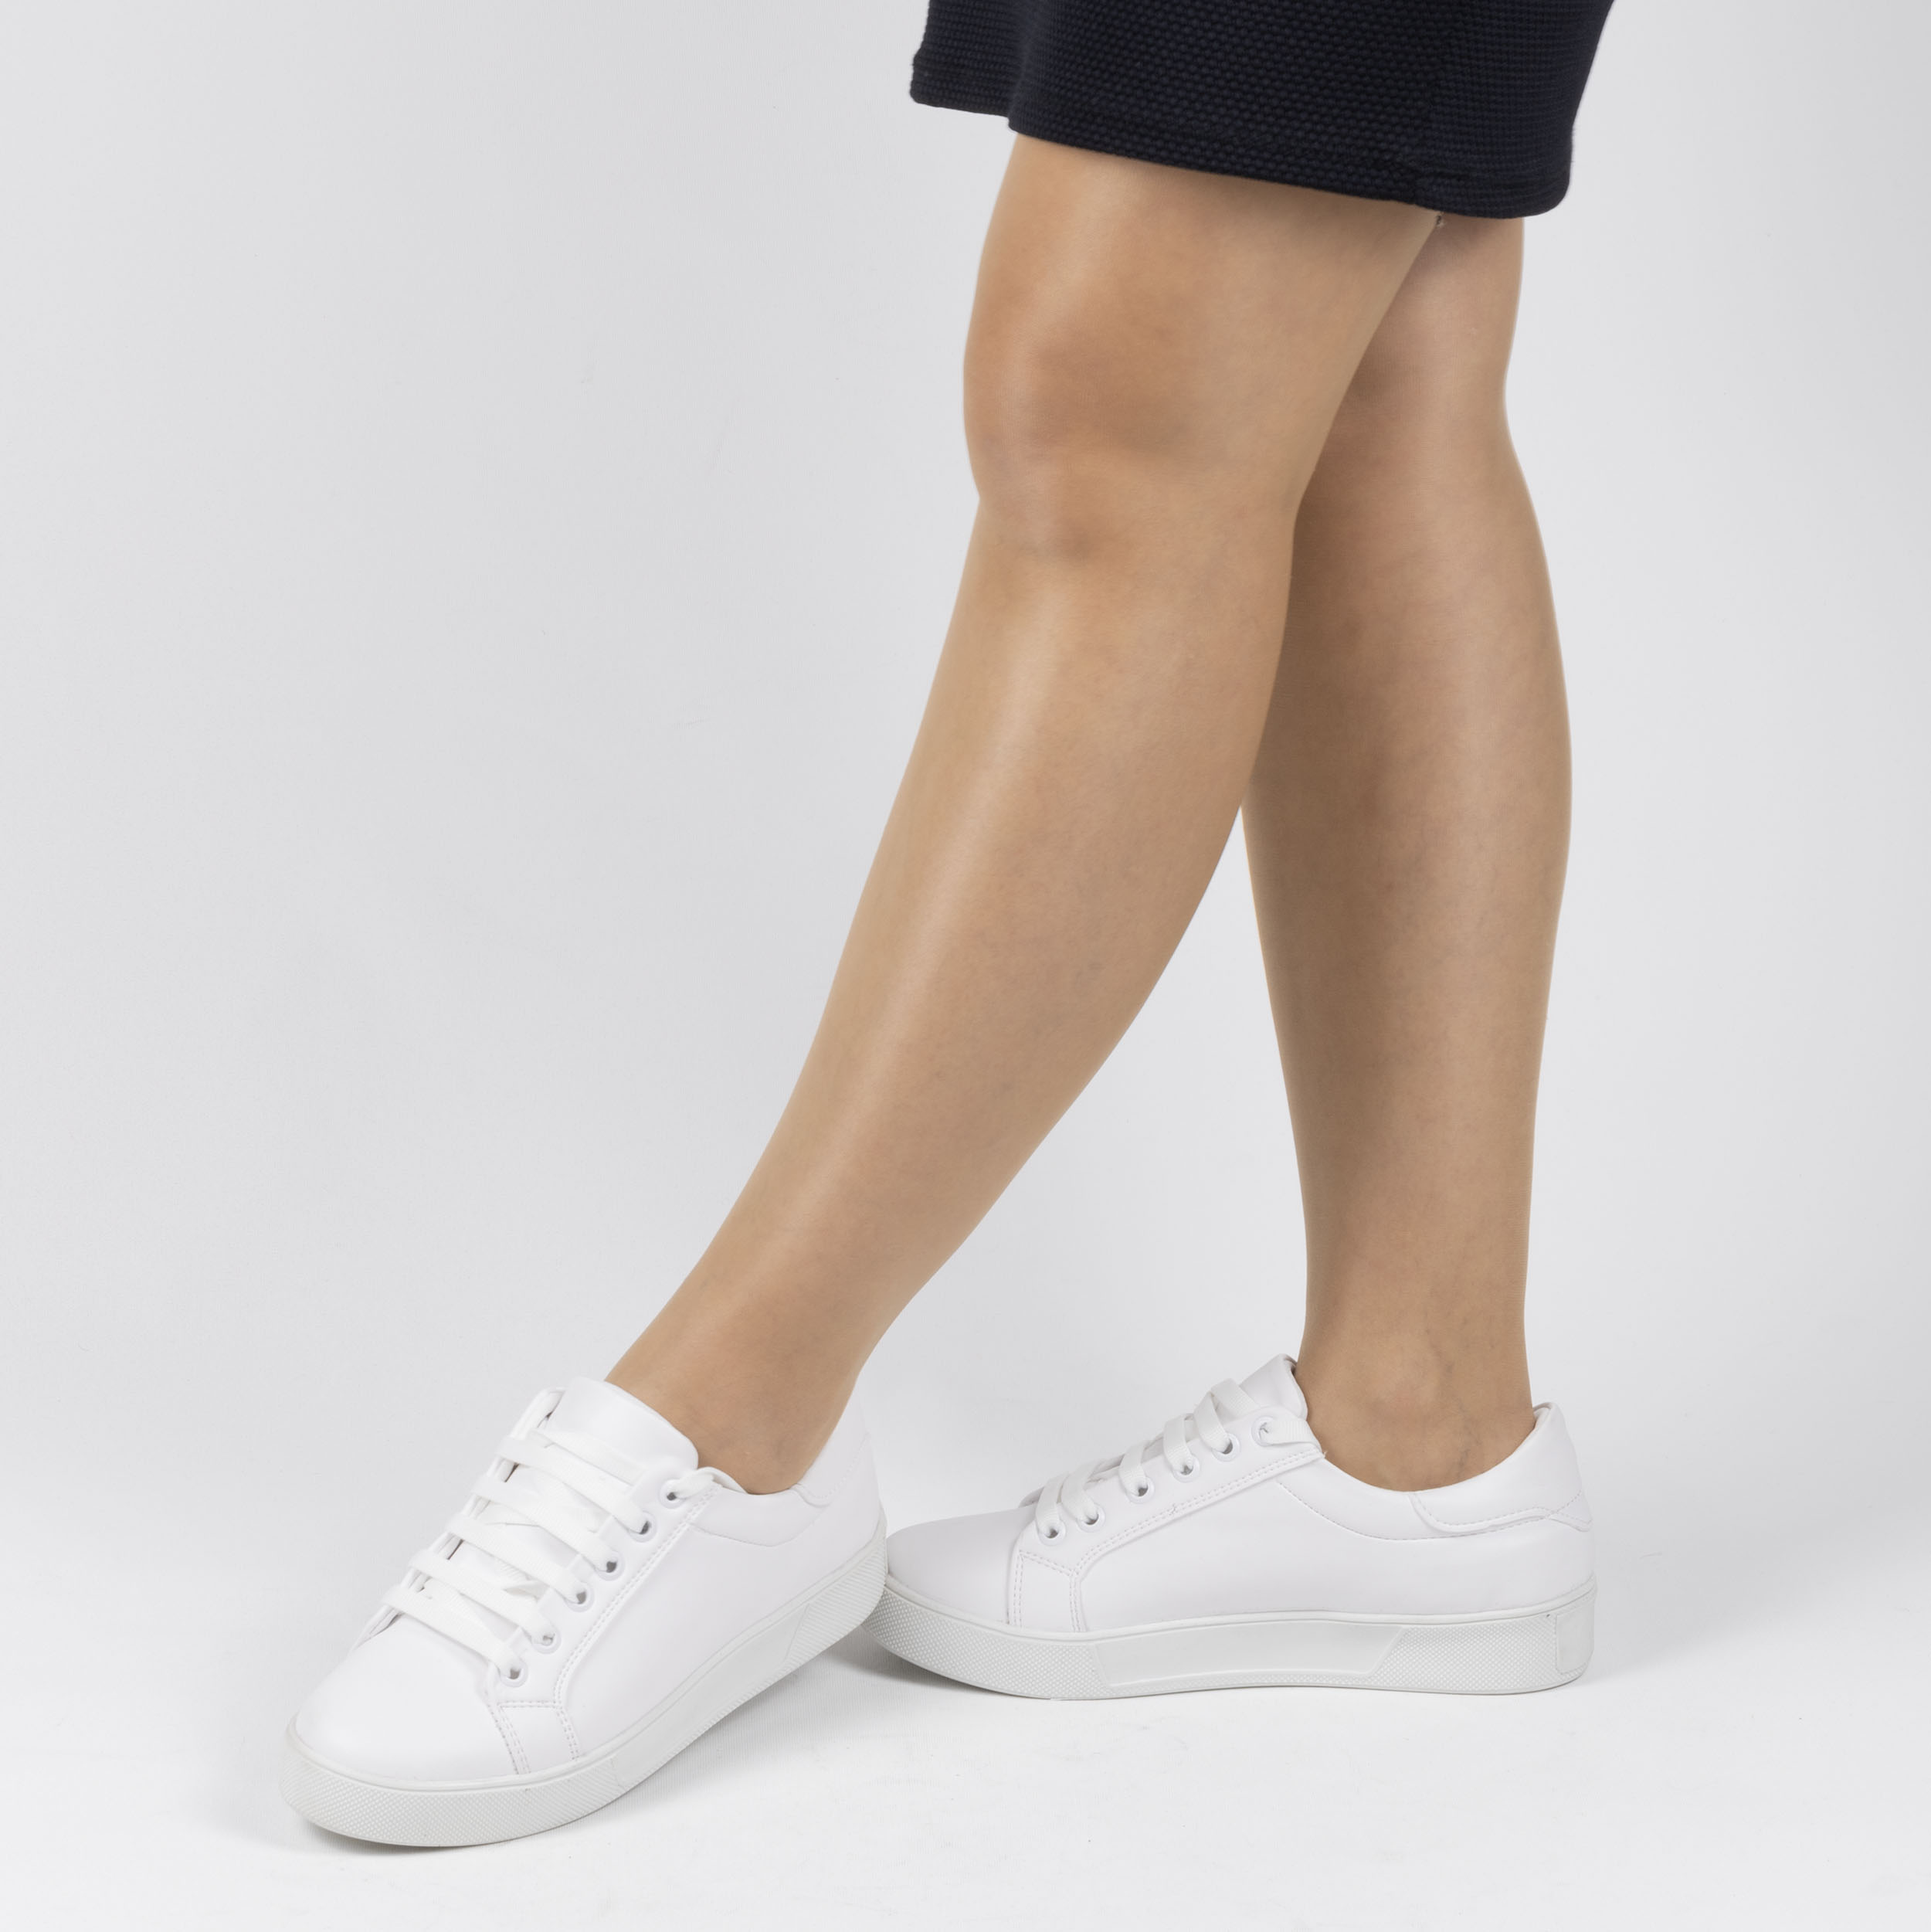 Kadın Beyaz Bağcıklı Günlük Termo Taban Spor Ayakkabı, Renk: Beyaz, Beden: 37